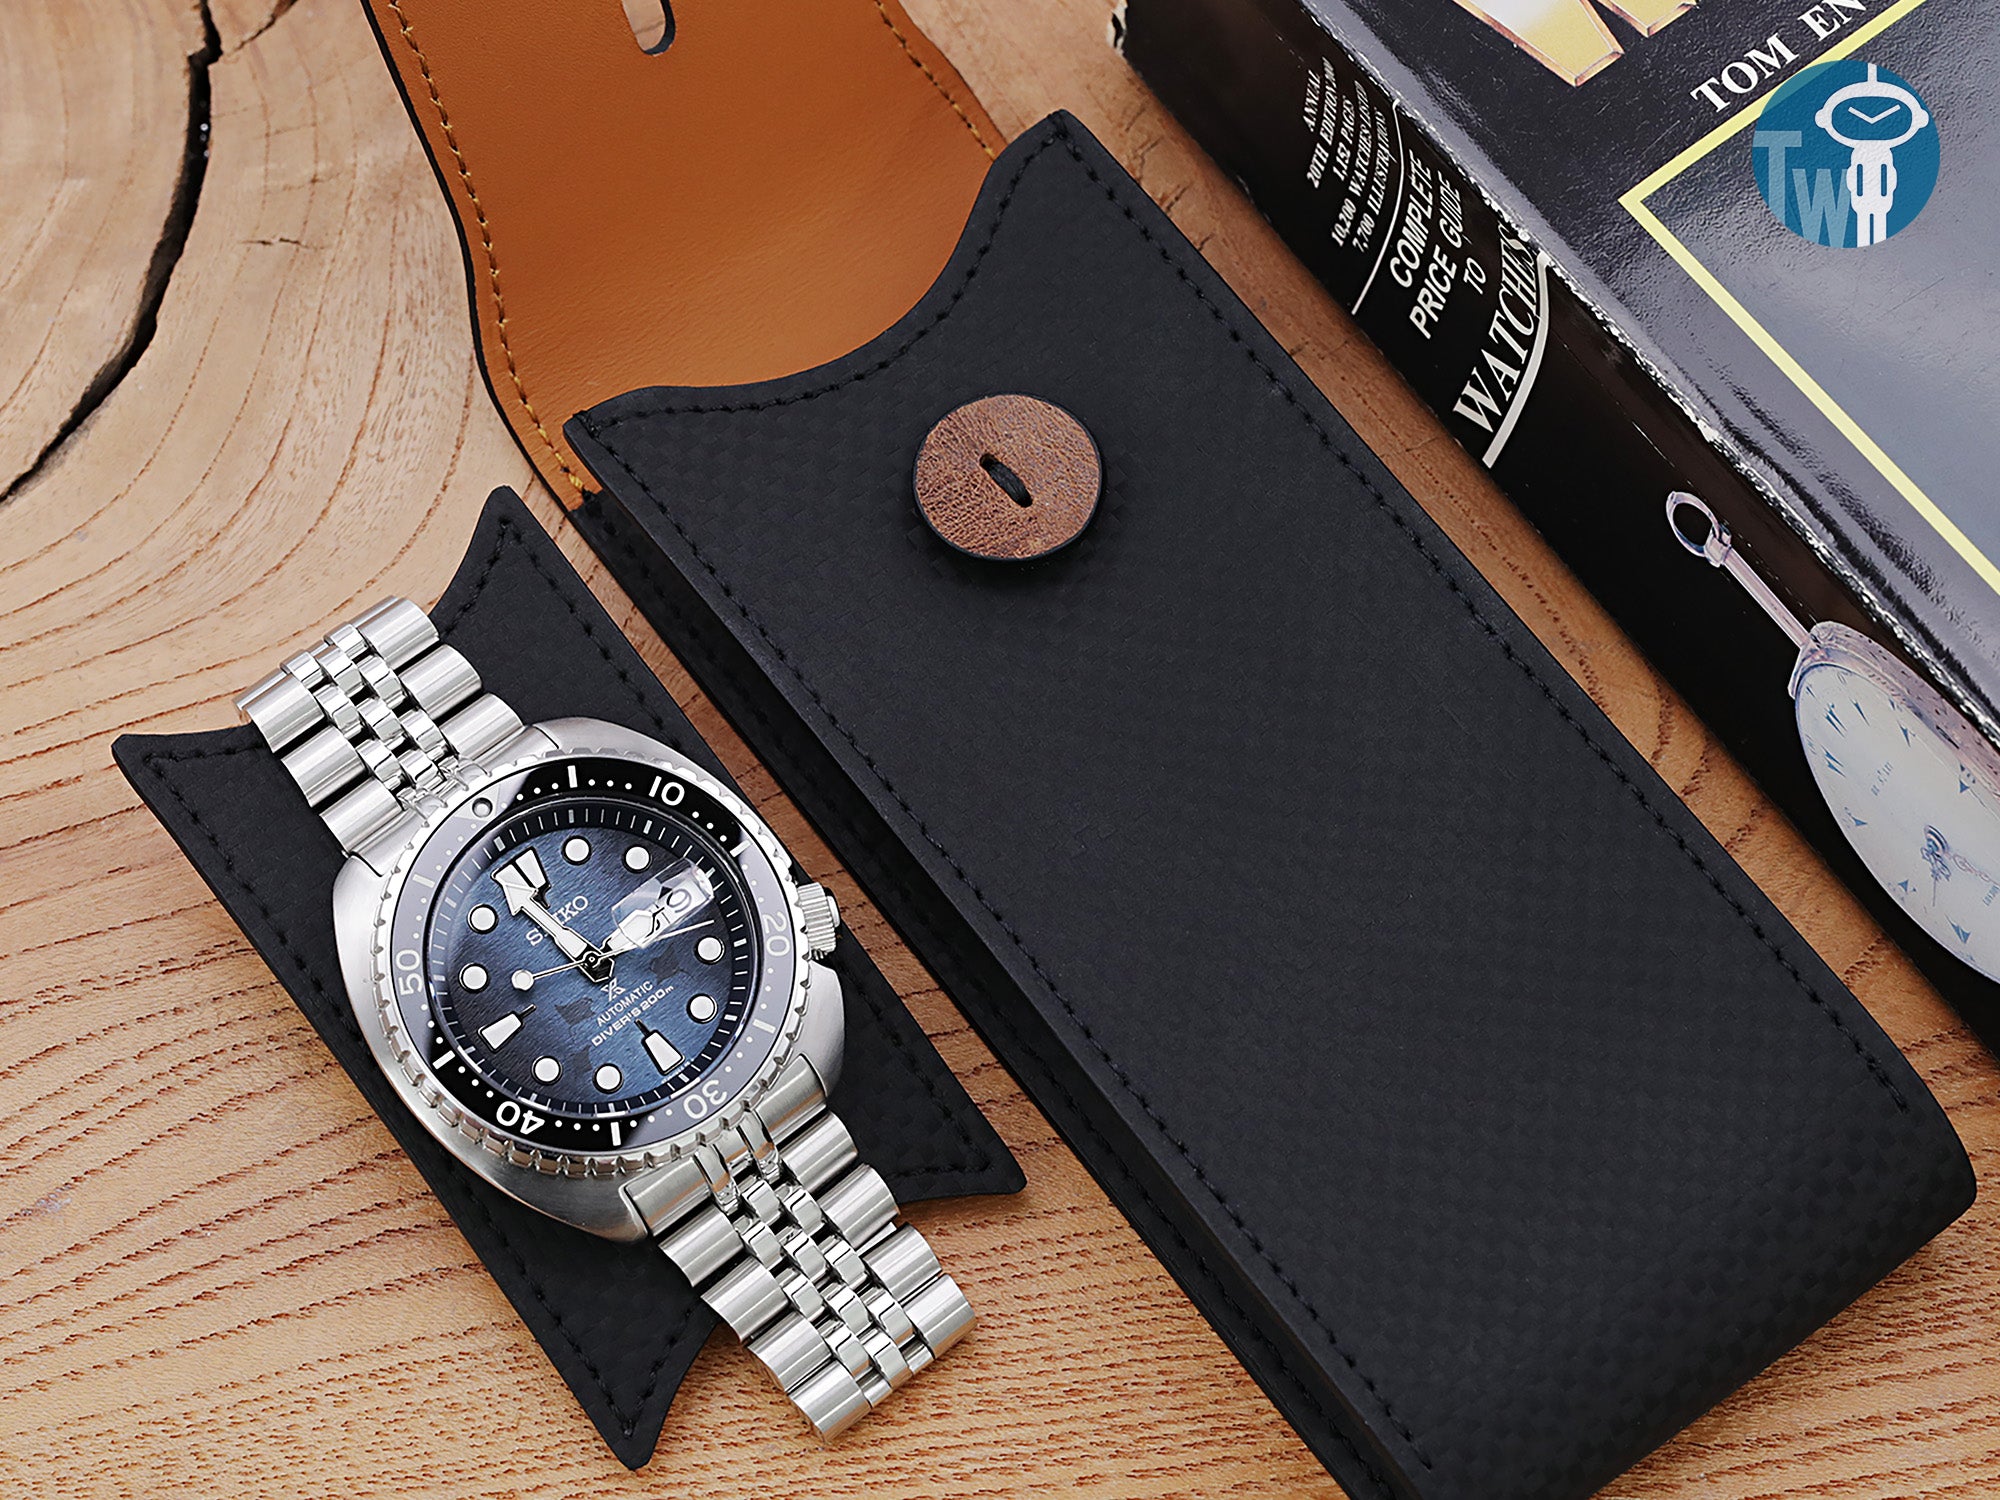 MT-3 德國 碳纖皮革 腕錶收納袋 旅行單只錶包 可擕式手錶保護袋, 小號